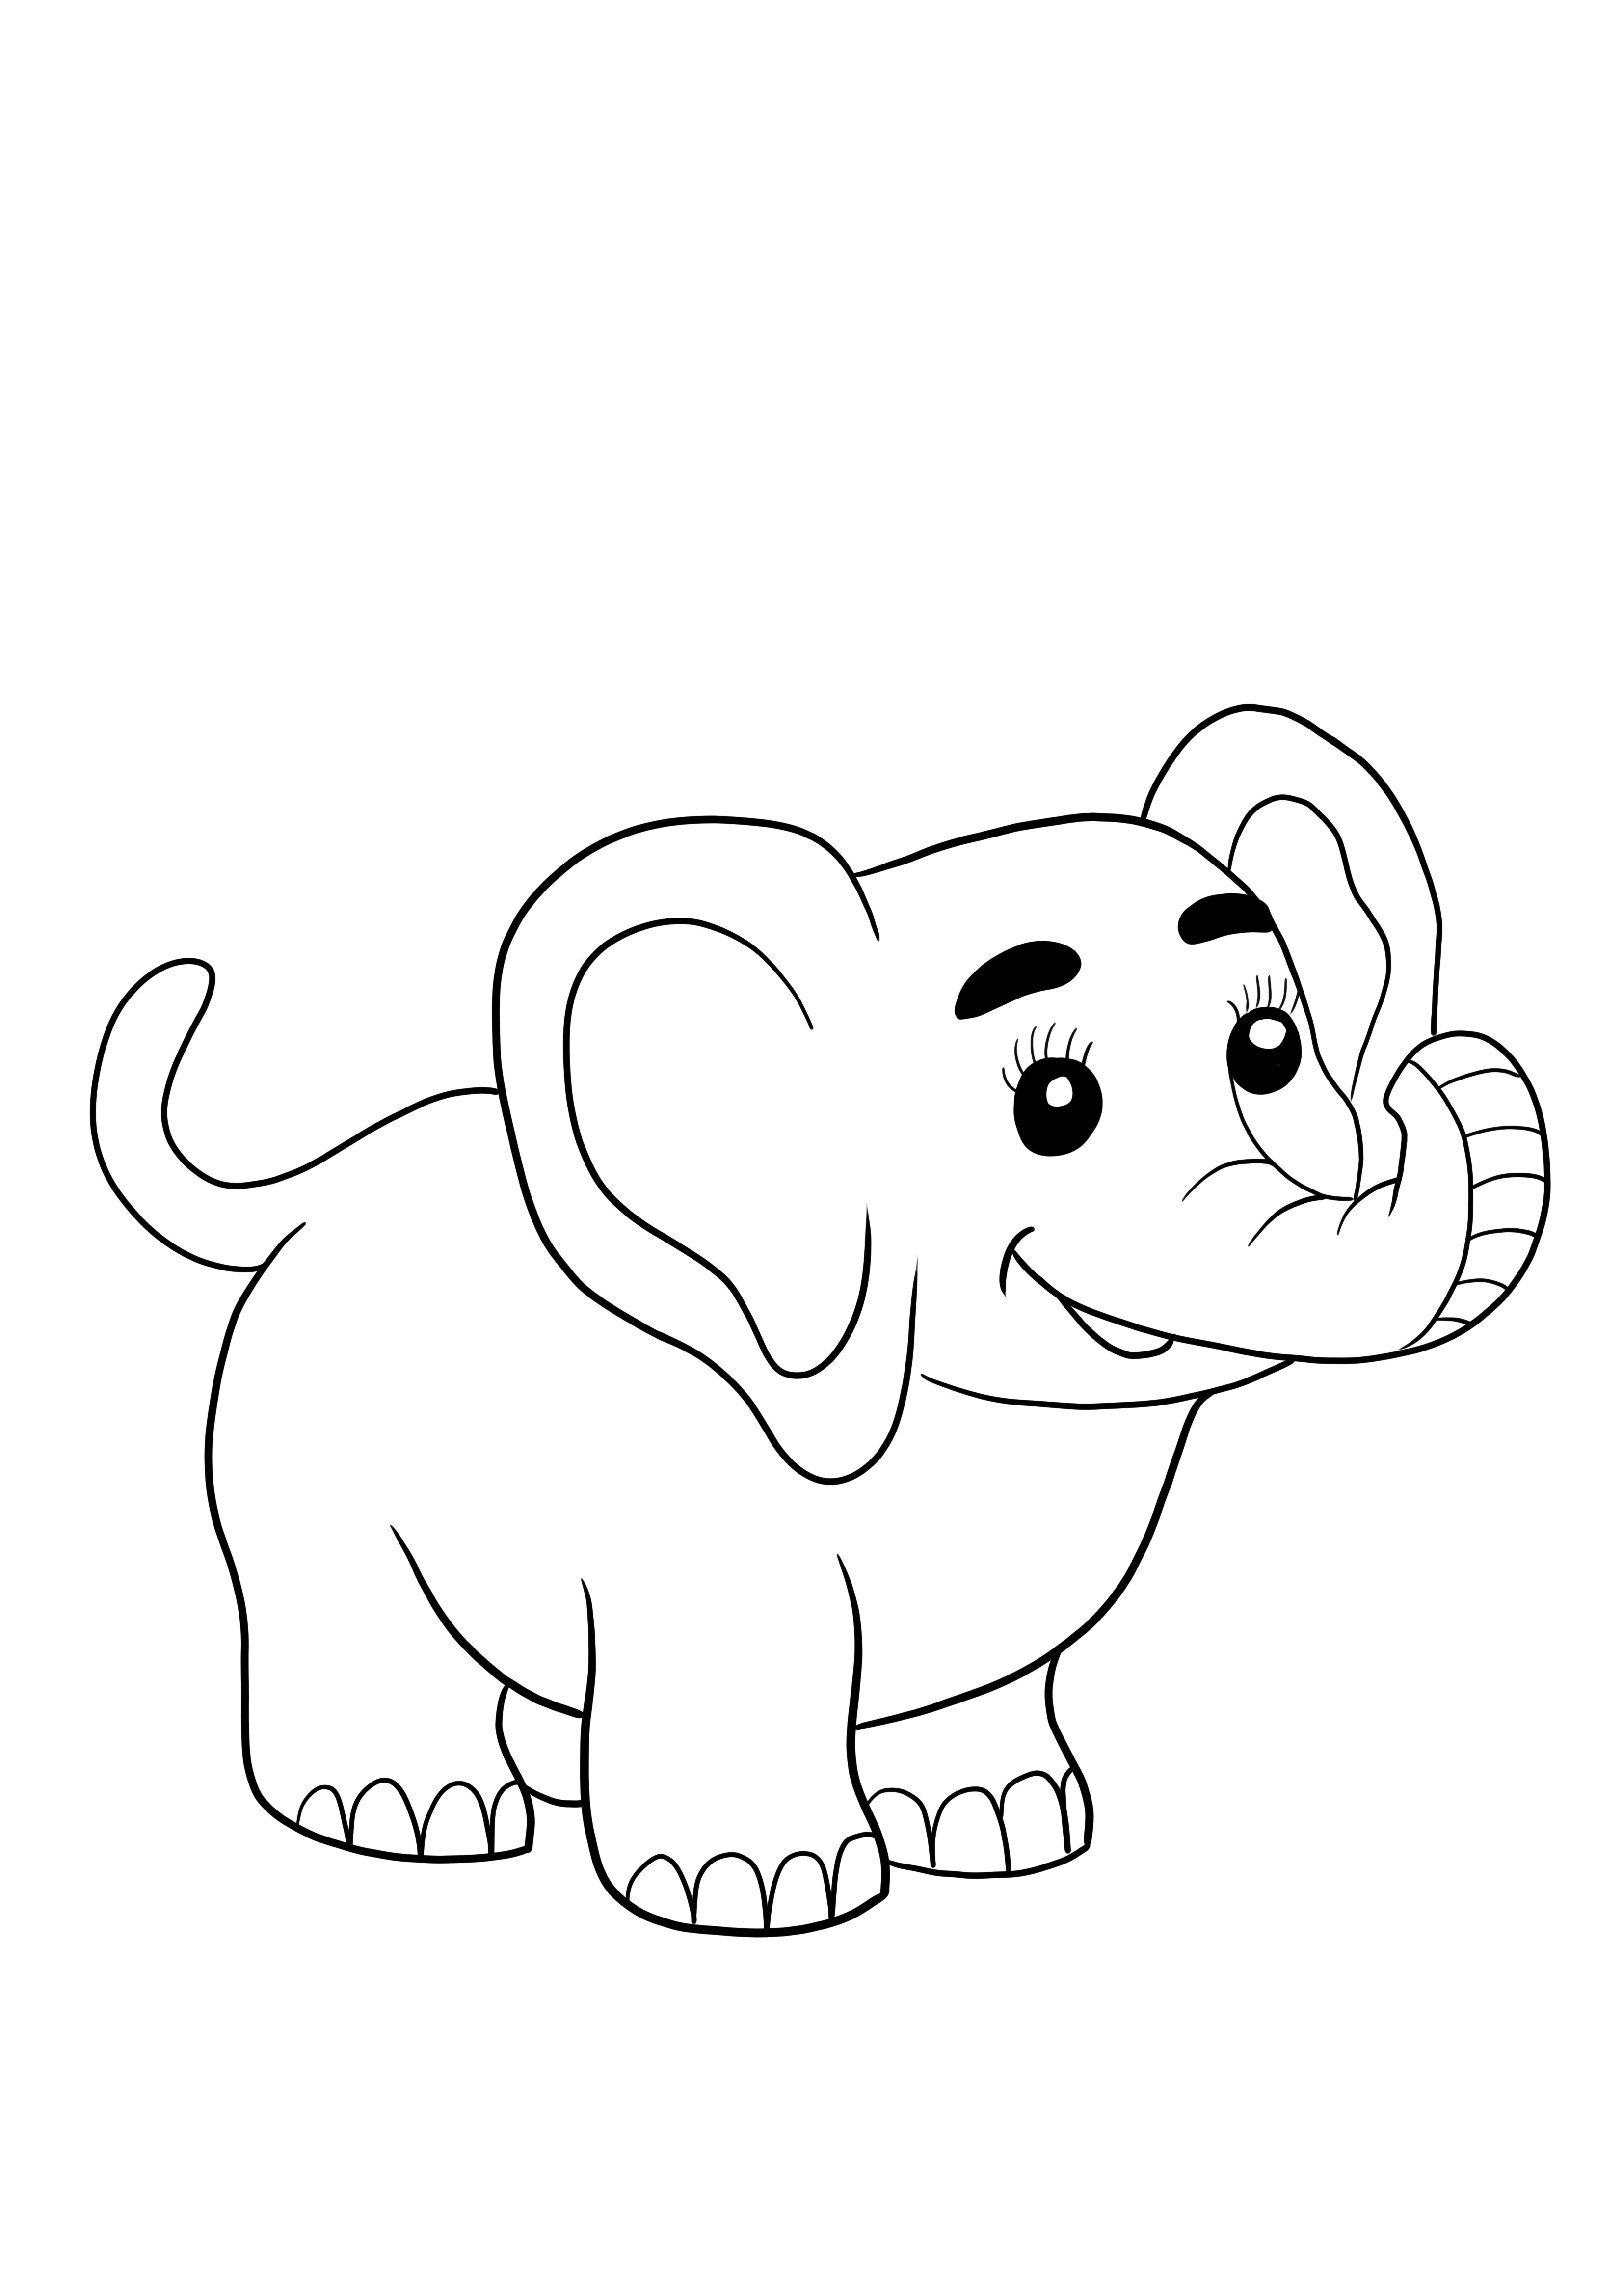 Simpatico elefantino da stampare e colorare gratis per bambini di tutte le età